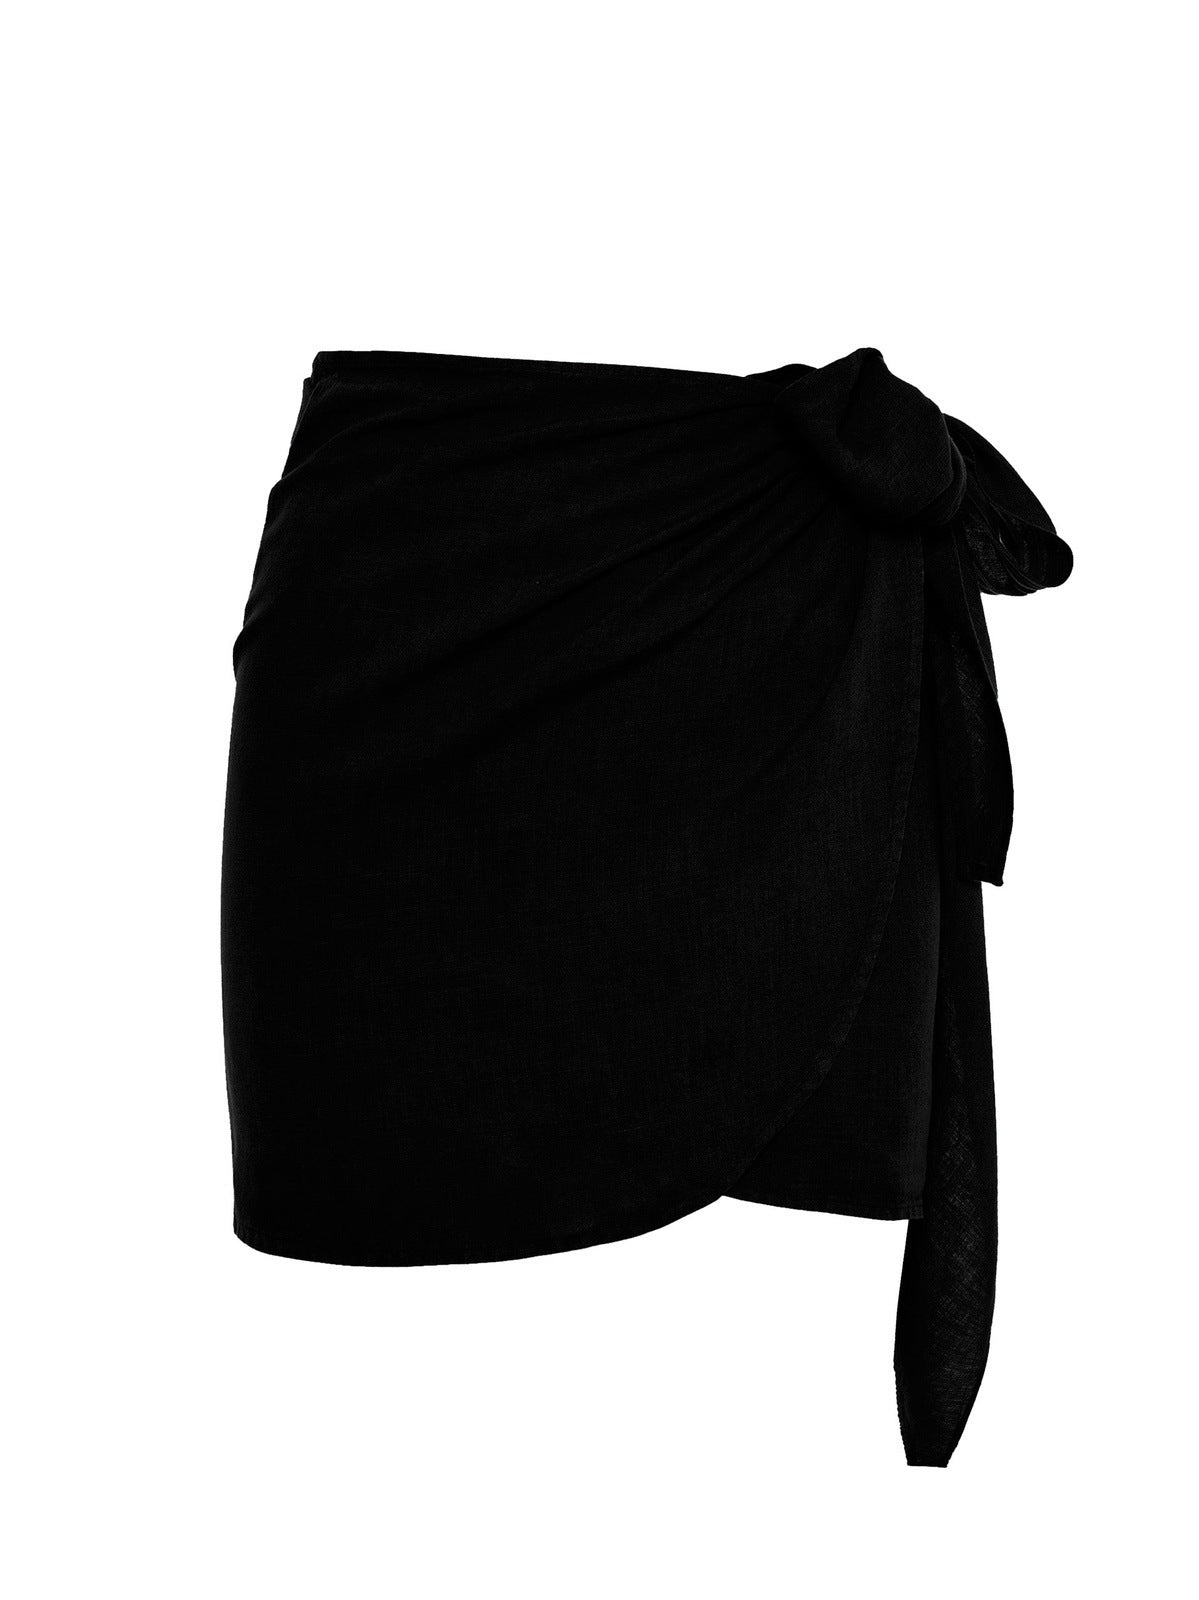 The Ruban Linen skirt in Black - ReLife